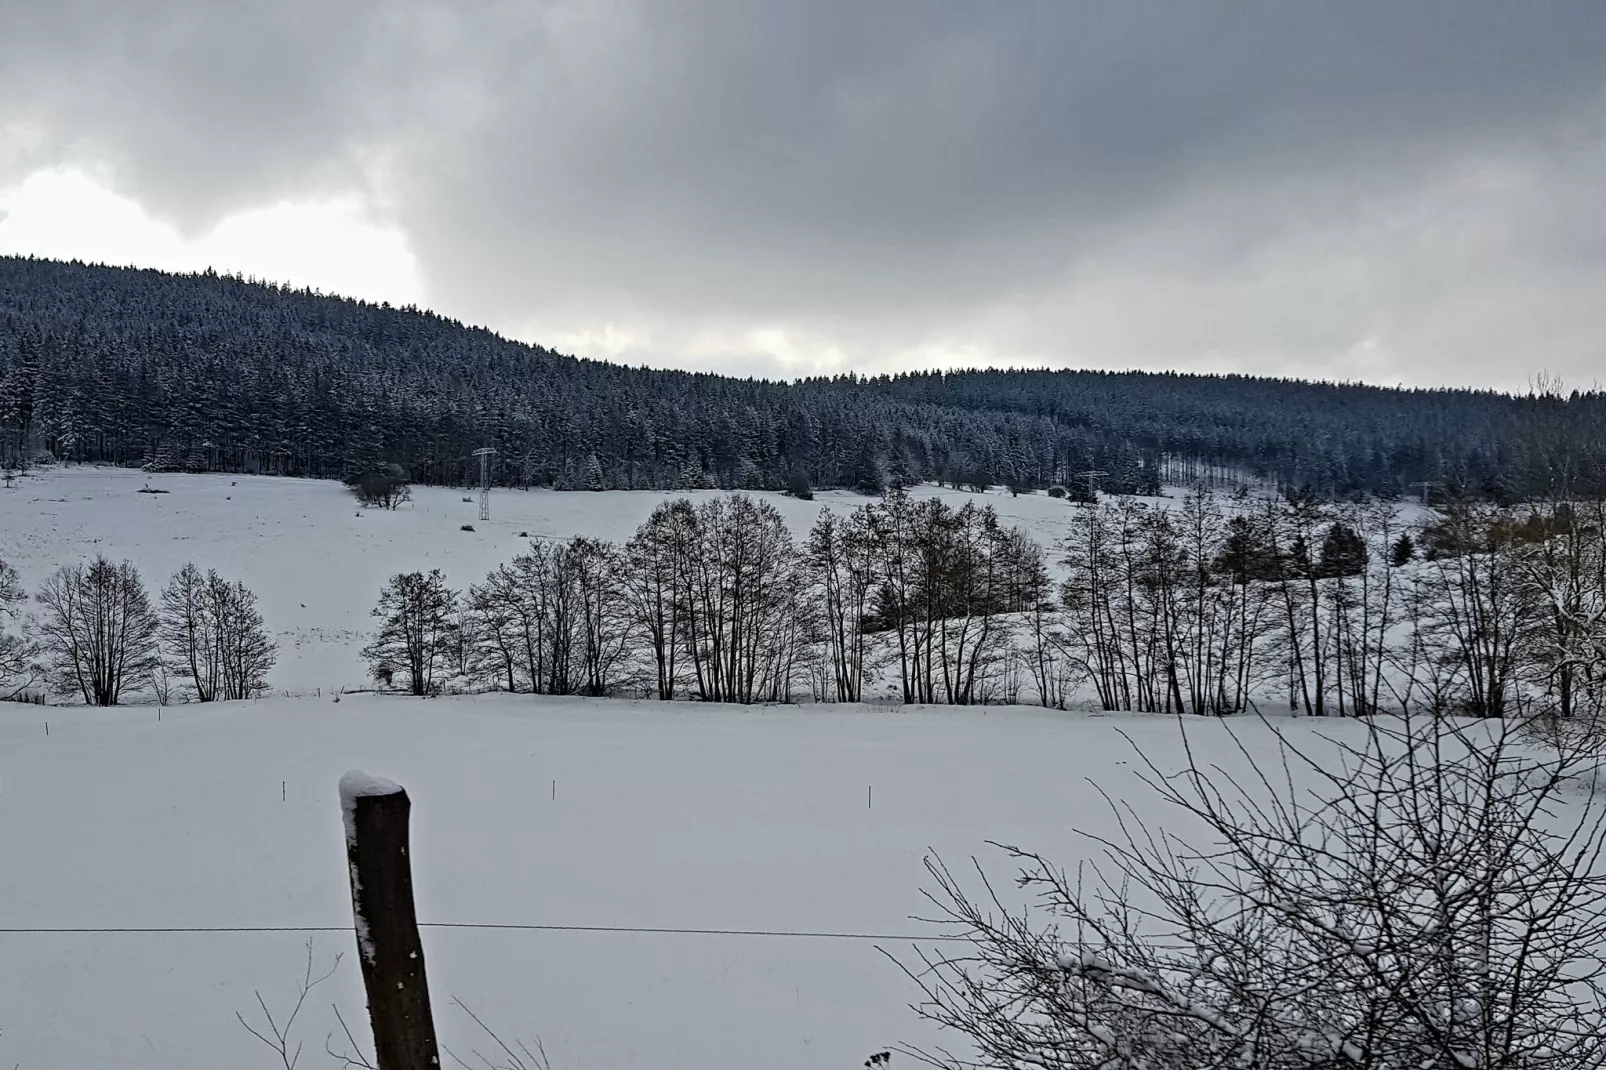 Gasse-Gebied winter 5km